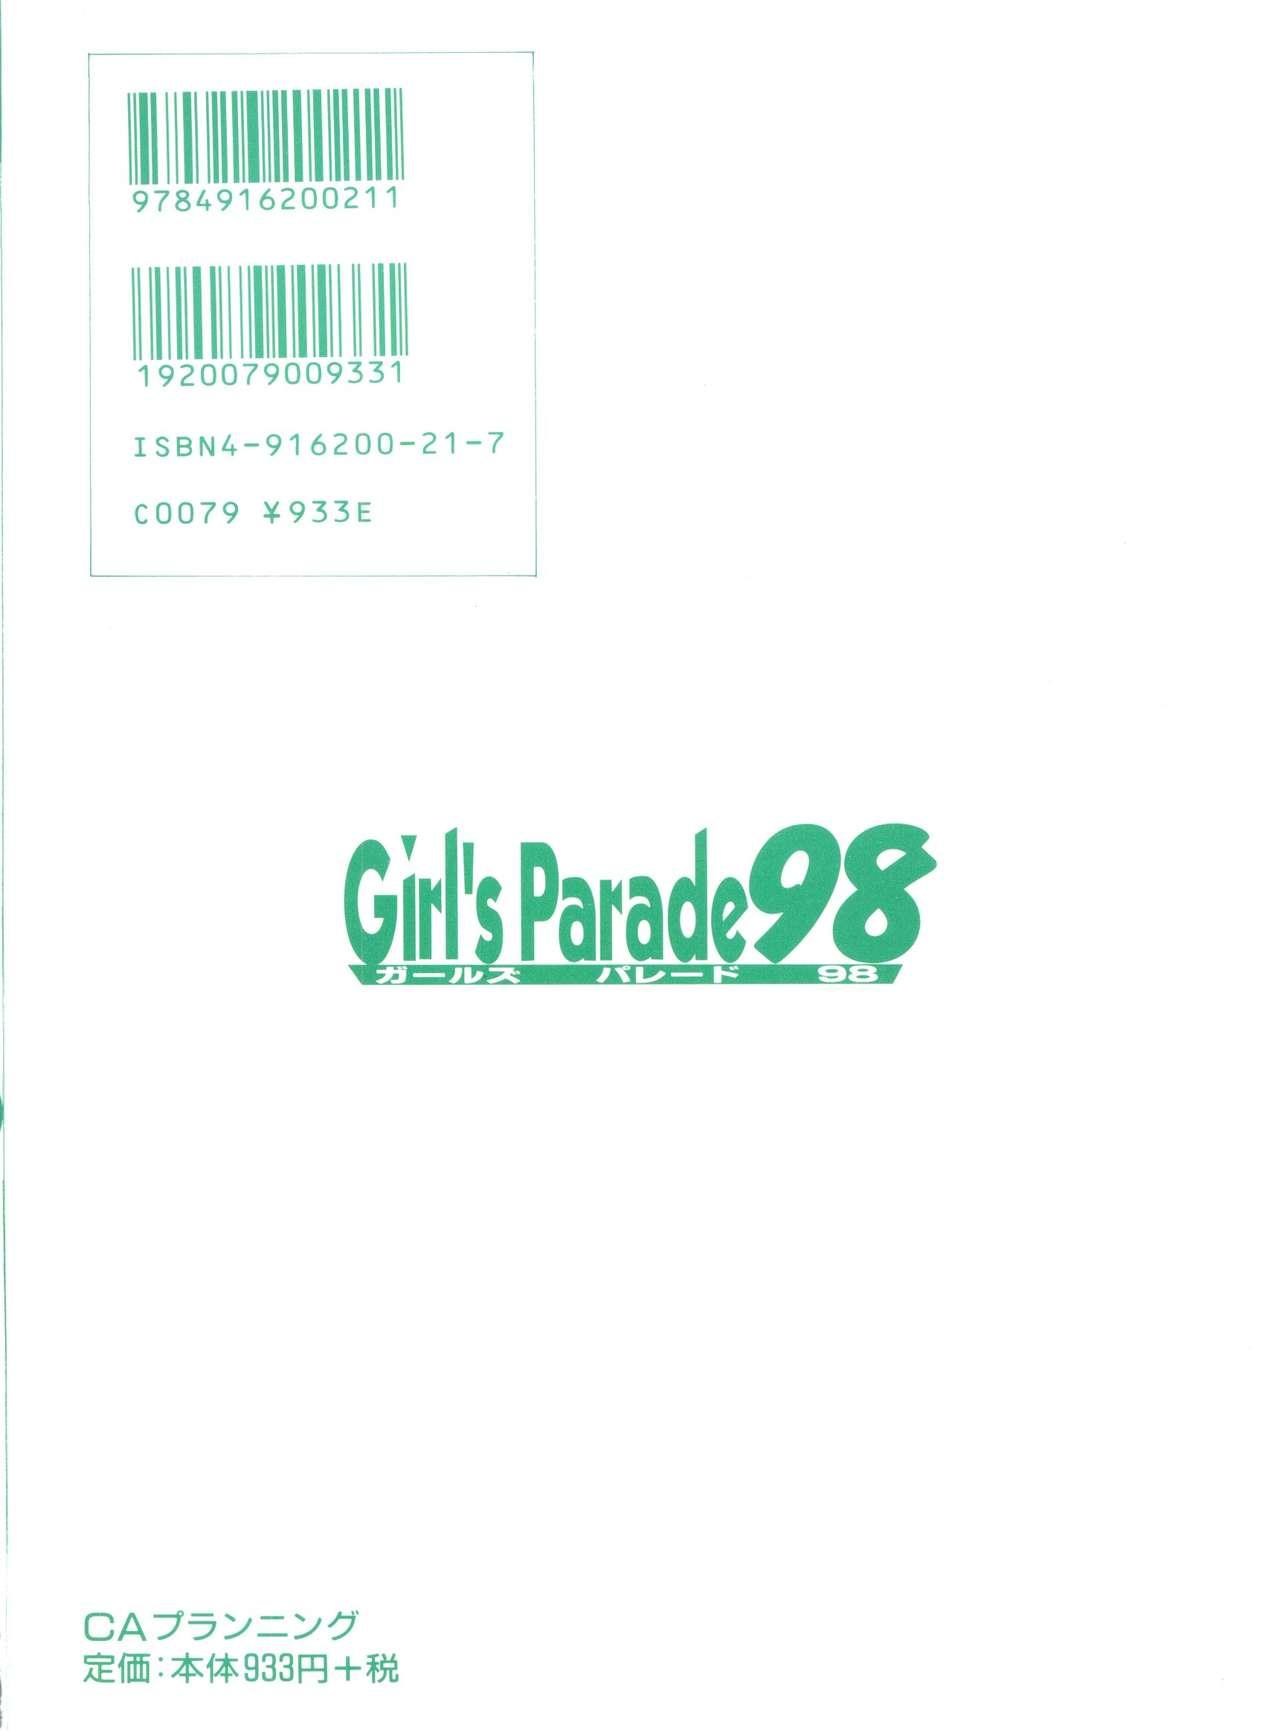 Girl's Parade 98 Take 1 166